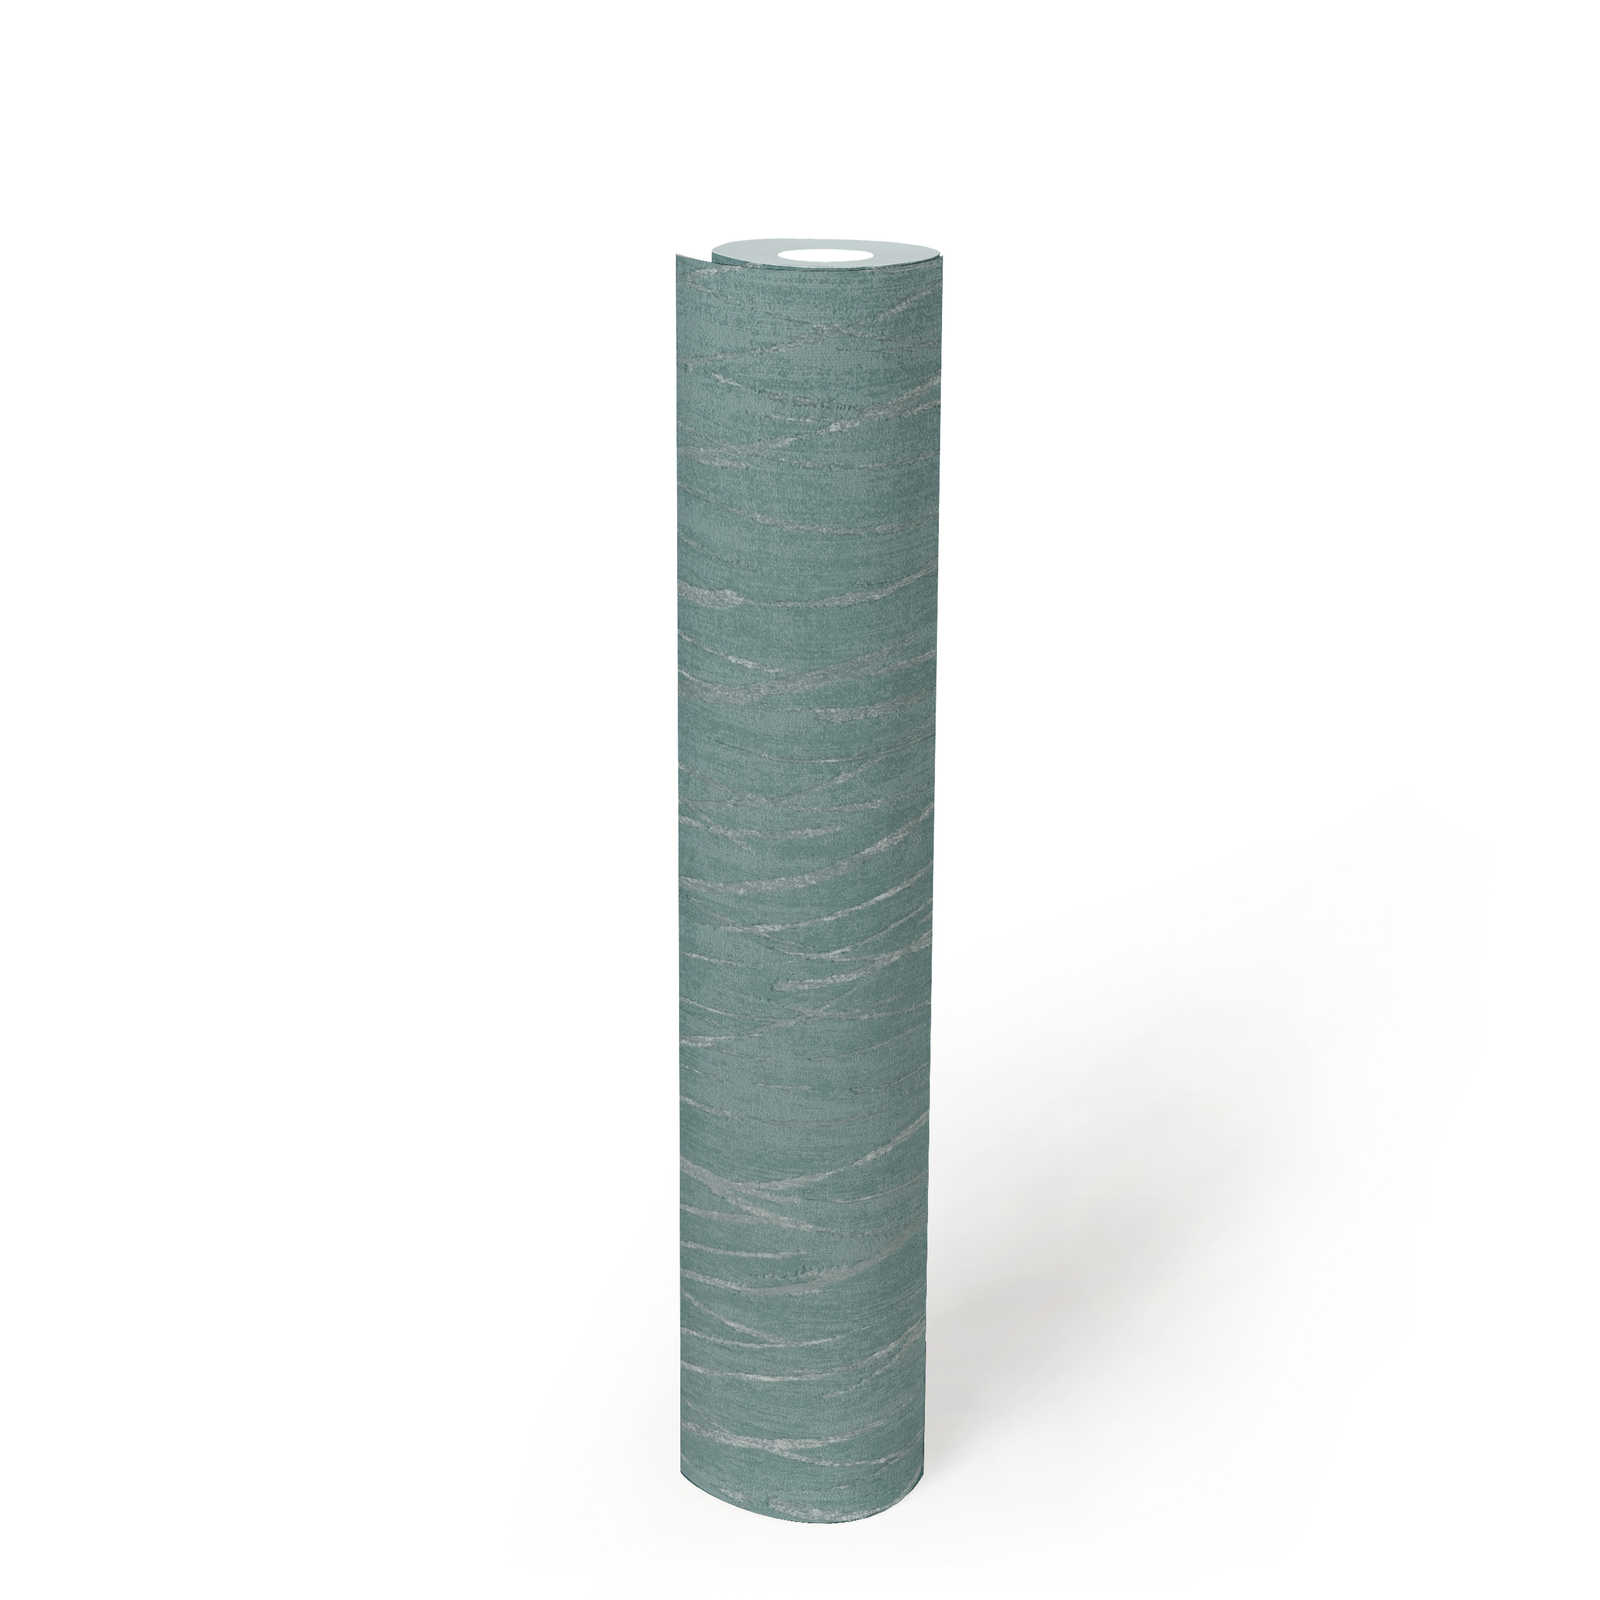             Papier peint structuré avec couleurs métalliques - bleu, vert, argent
        